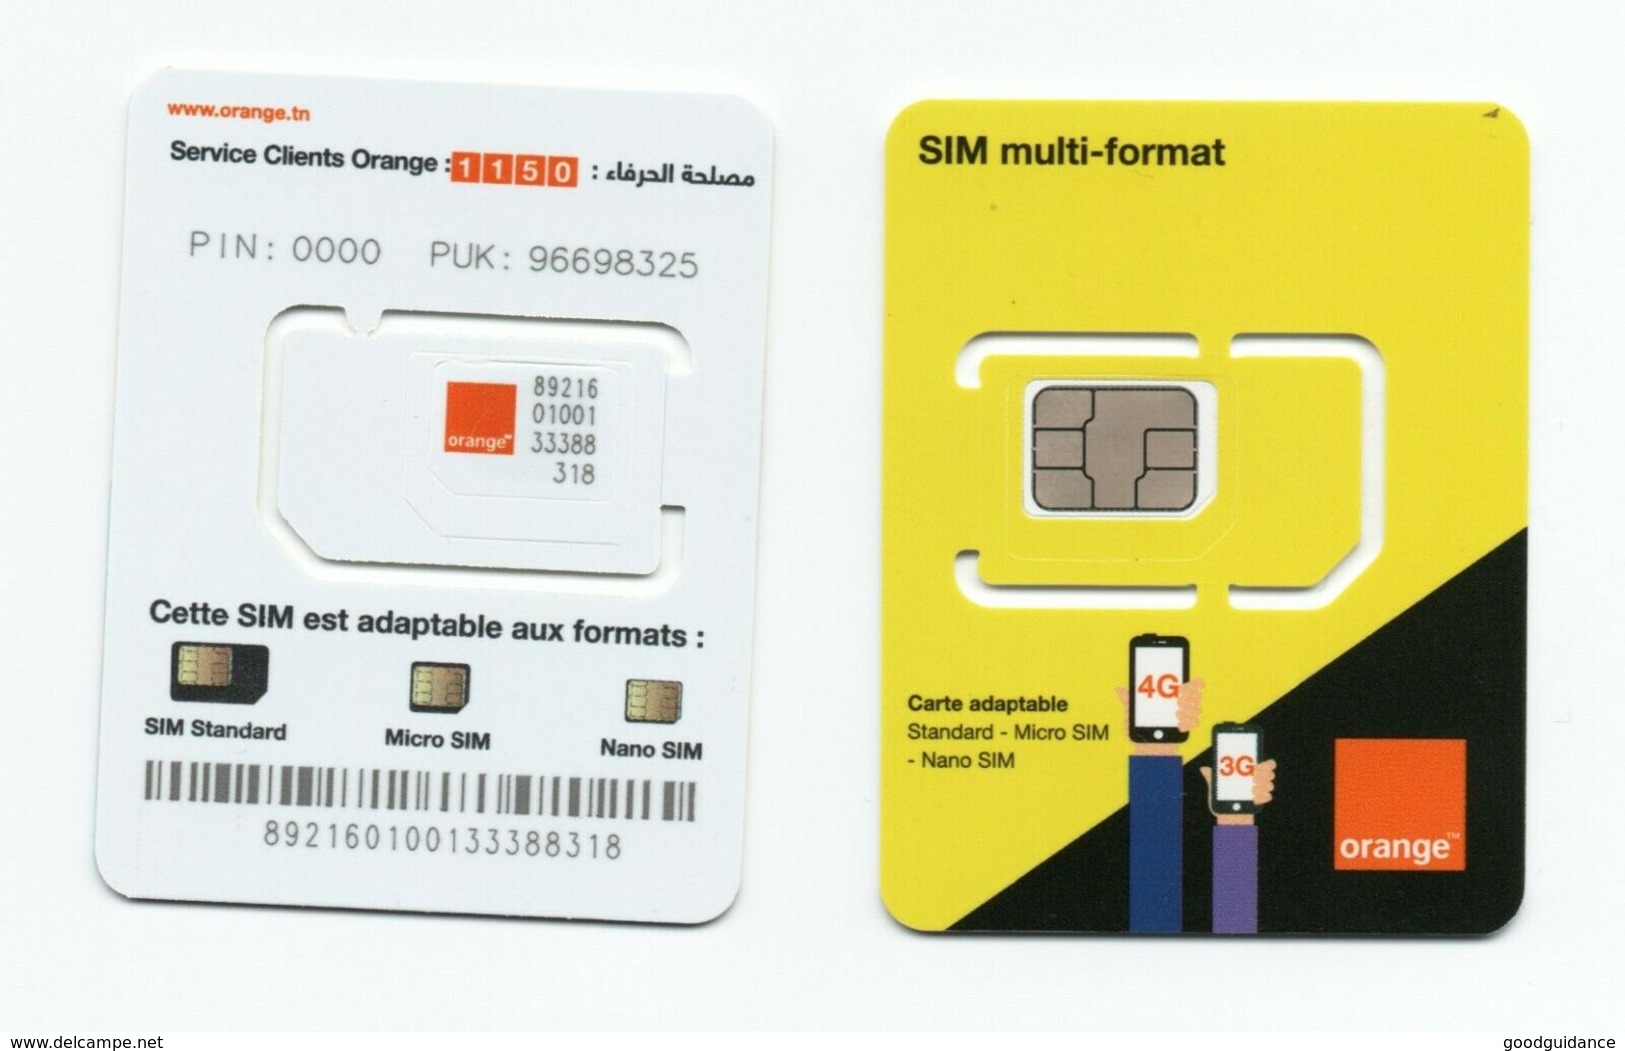 Tunisia- Tunisie - SIM card - Orange - 4G - Unused- Excellent quality